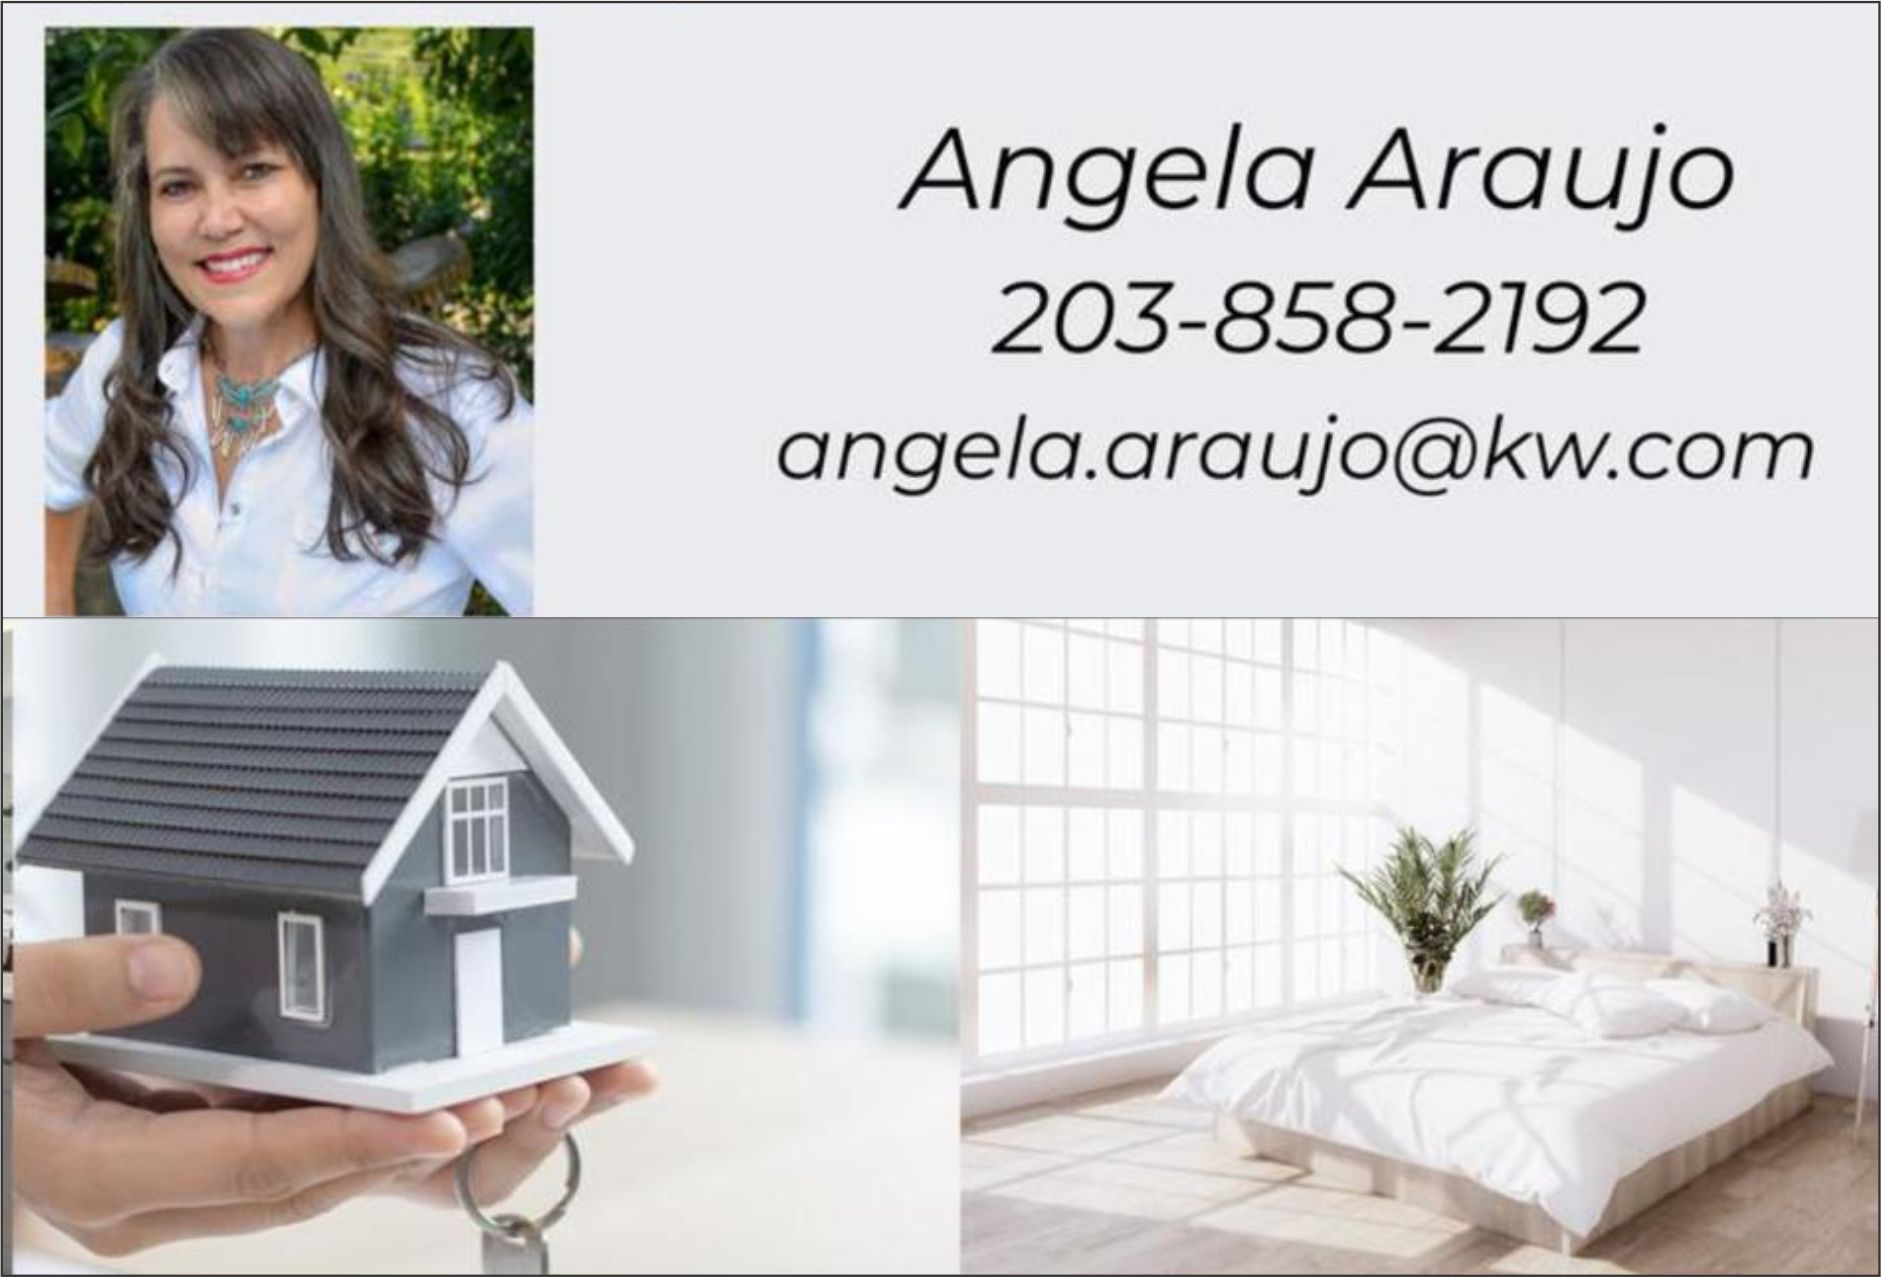 Ângela Araújo oferece consultoria especializada em compra e venda de imóveis